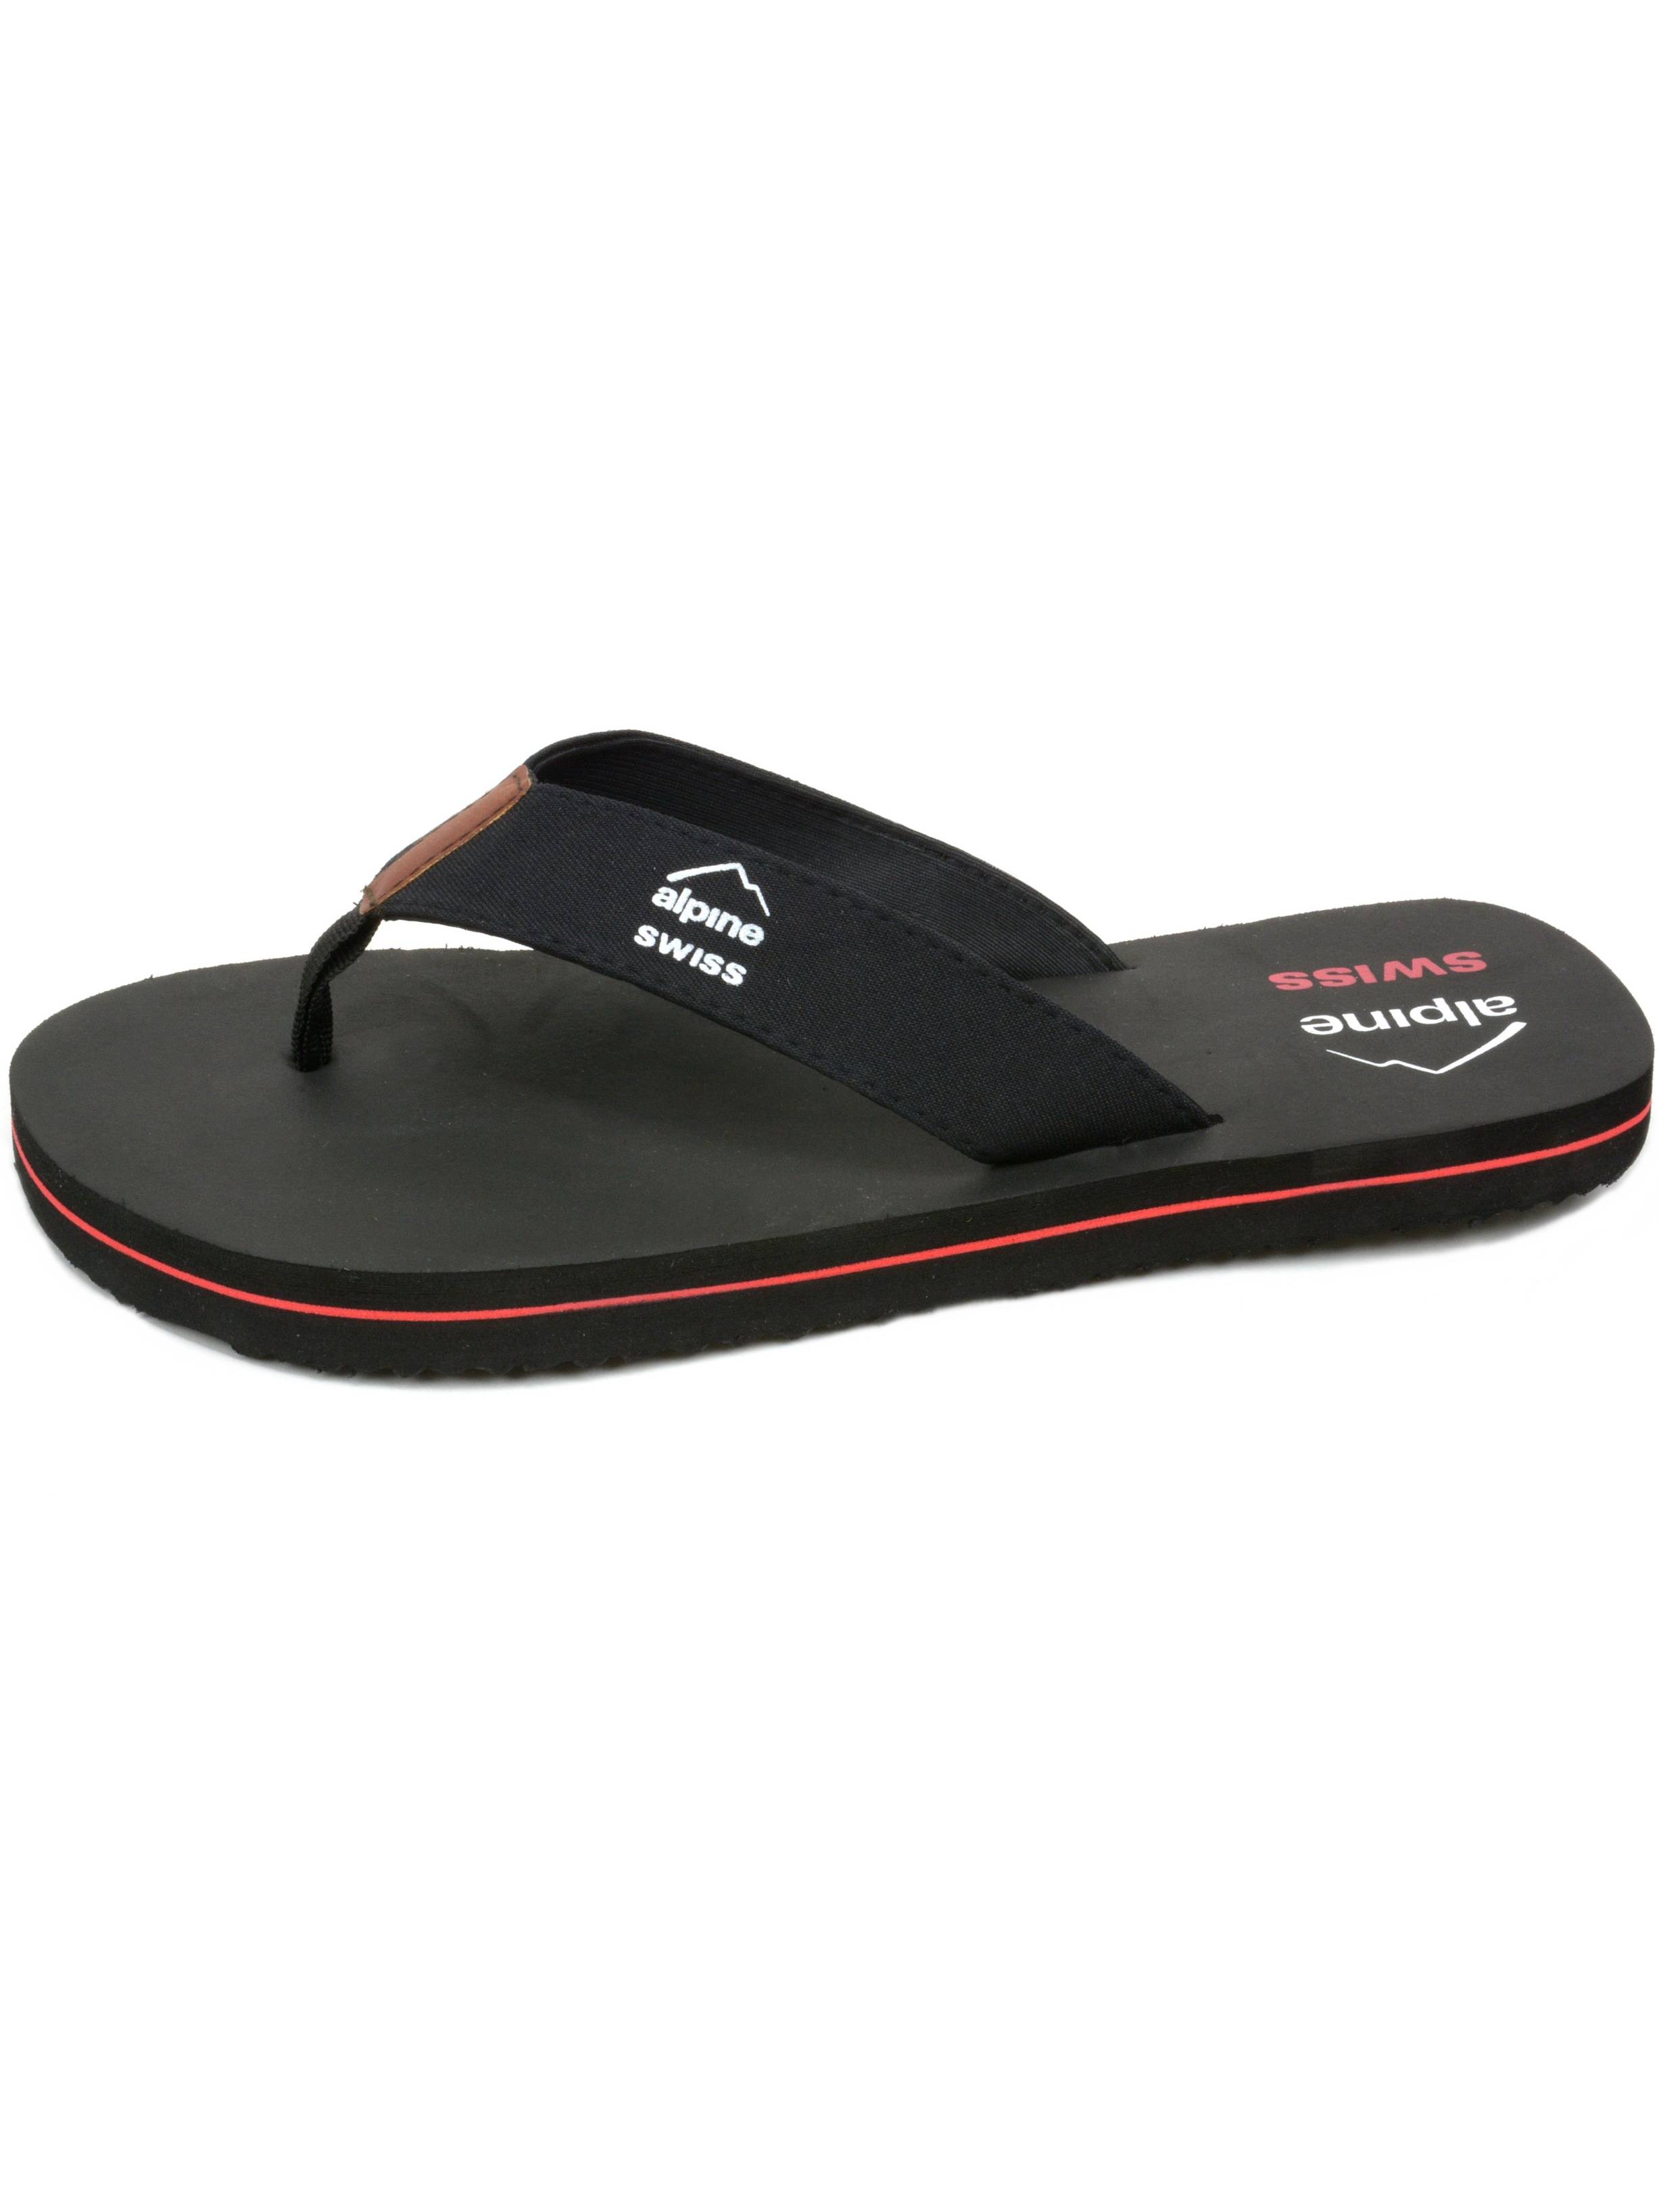 alpine swiss men's flip flops beach sandals lightweight eva sole comfort thongs - image 3 of 6